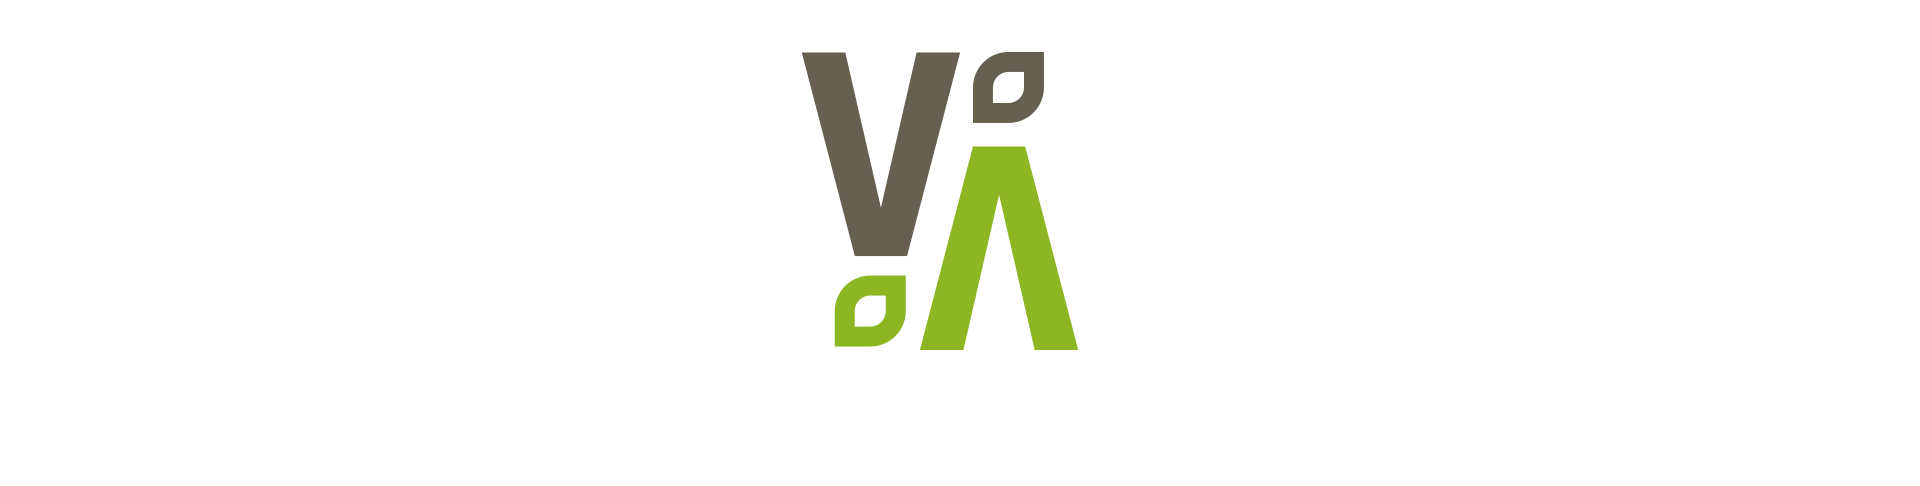 logo elevarth green